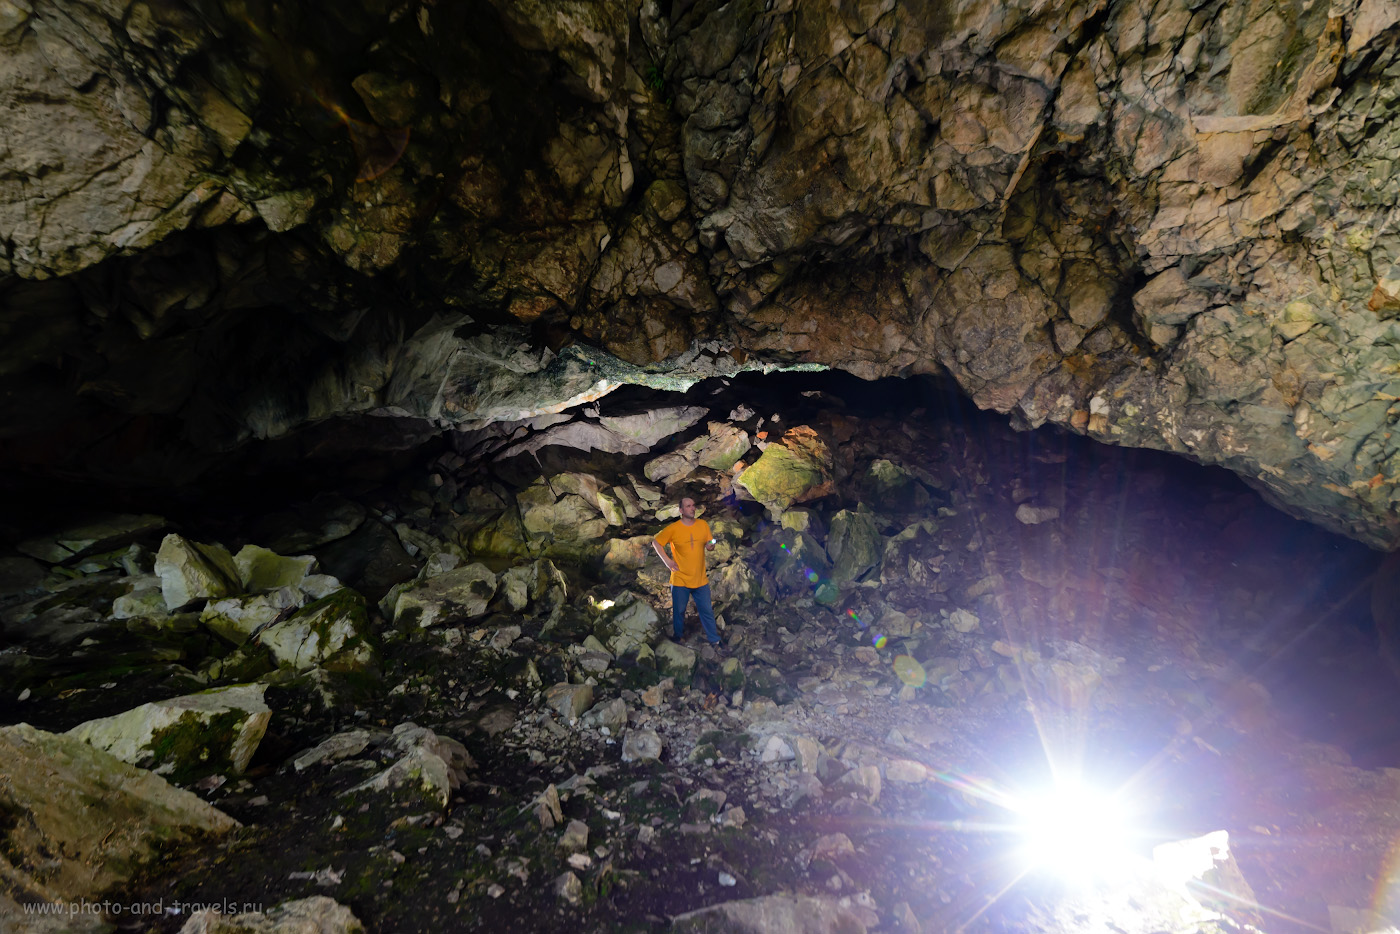 Фото 1. Начинающий фотограф и путешественник в гроте Большой Аракаевской пещеры. Её найти оказалось проще всего. Настройки: В=1/40 сек, f/5.6, ISO 1250, поправка экспозиции -1EV, ФР=14 мм.